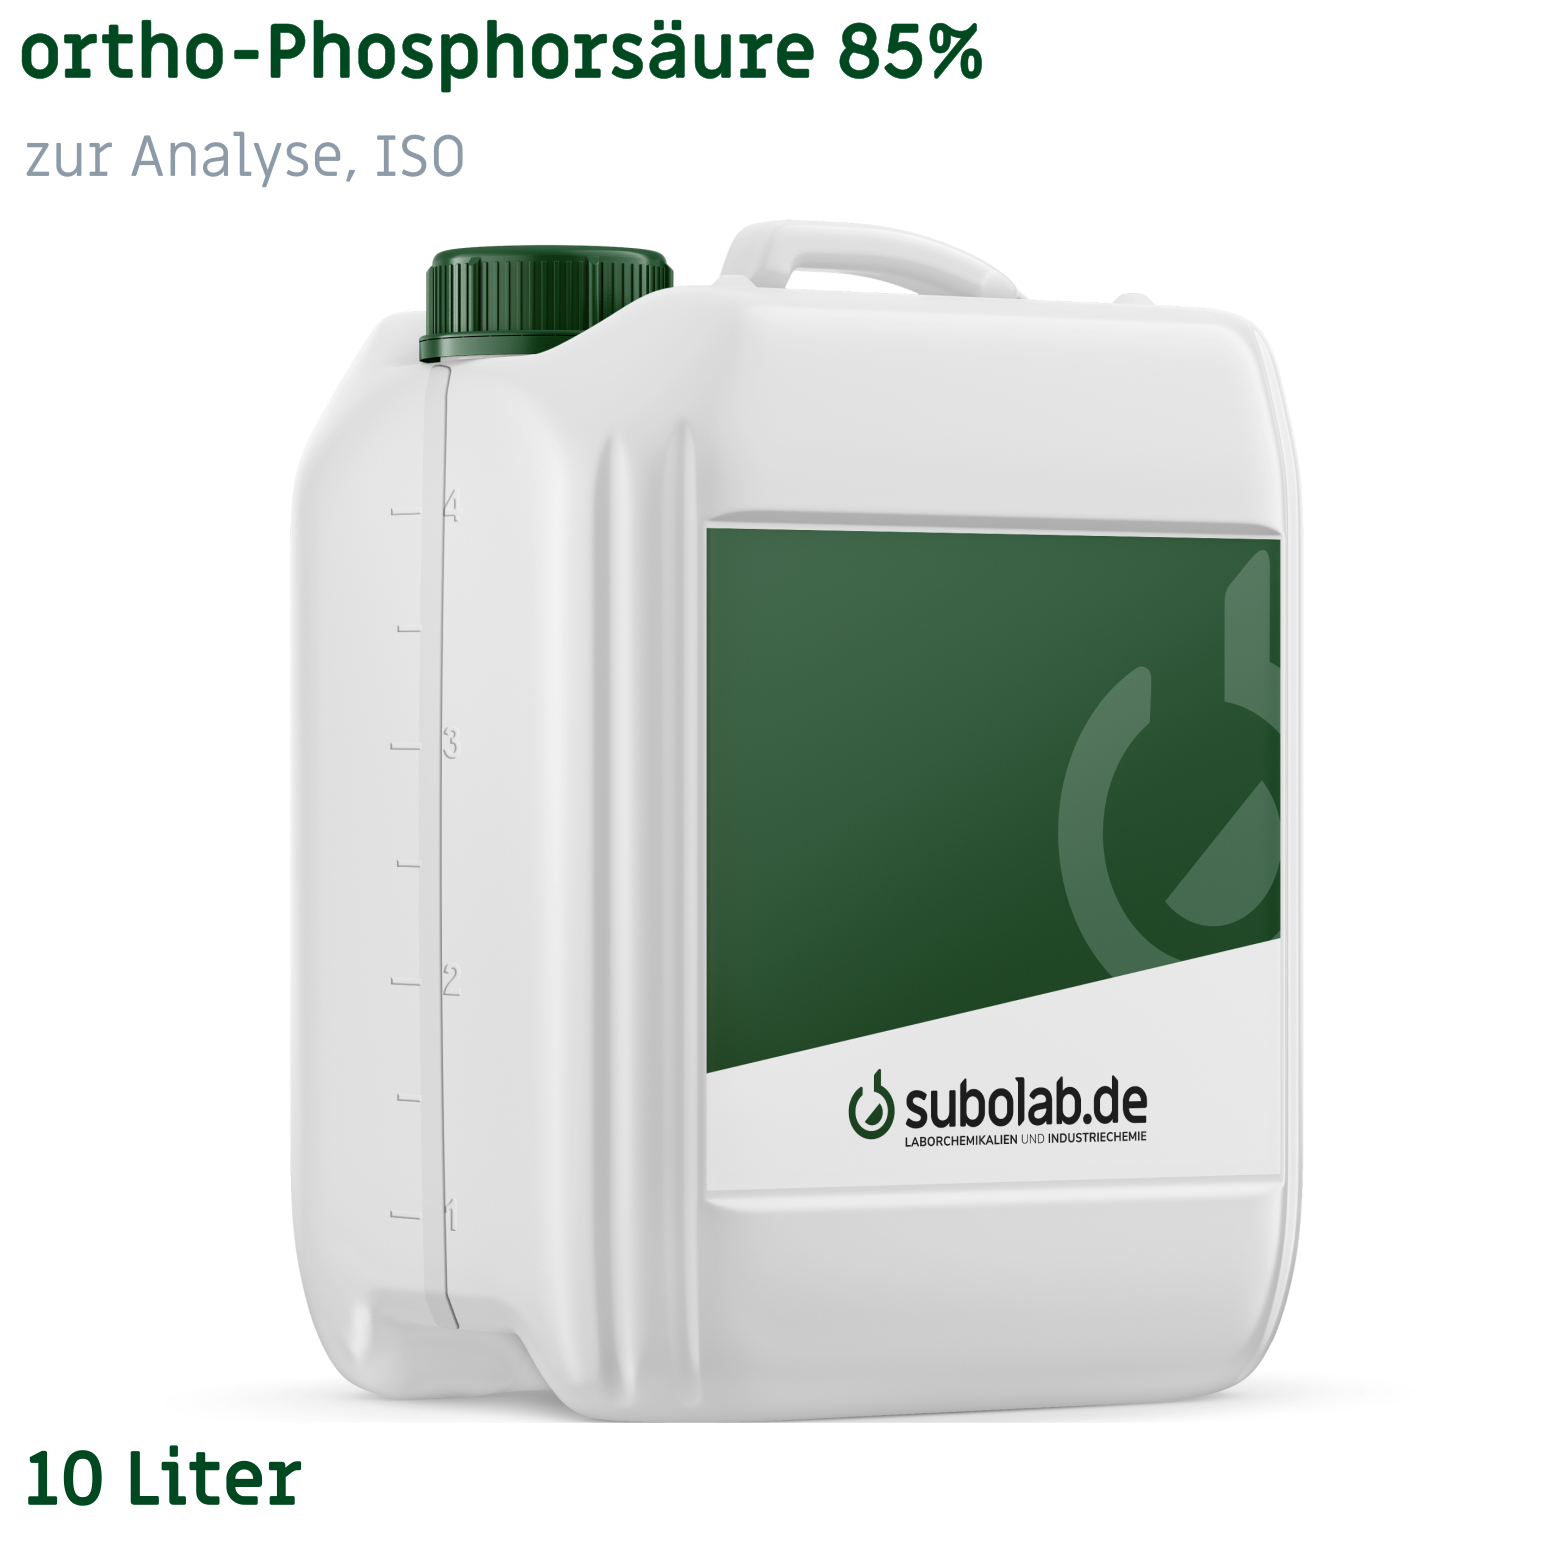 Bild von ortho-Phosphorsäure 85% zur Analyse, ISO (10 Liter)